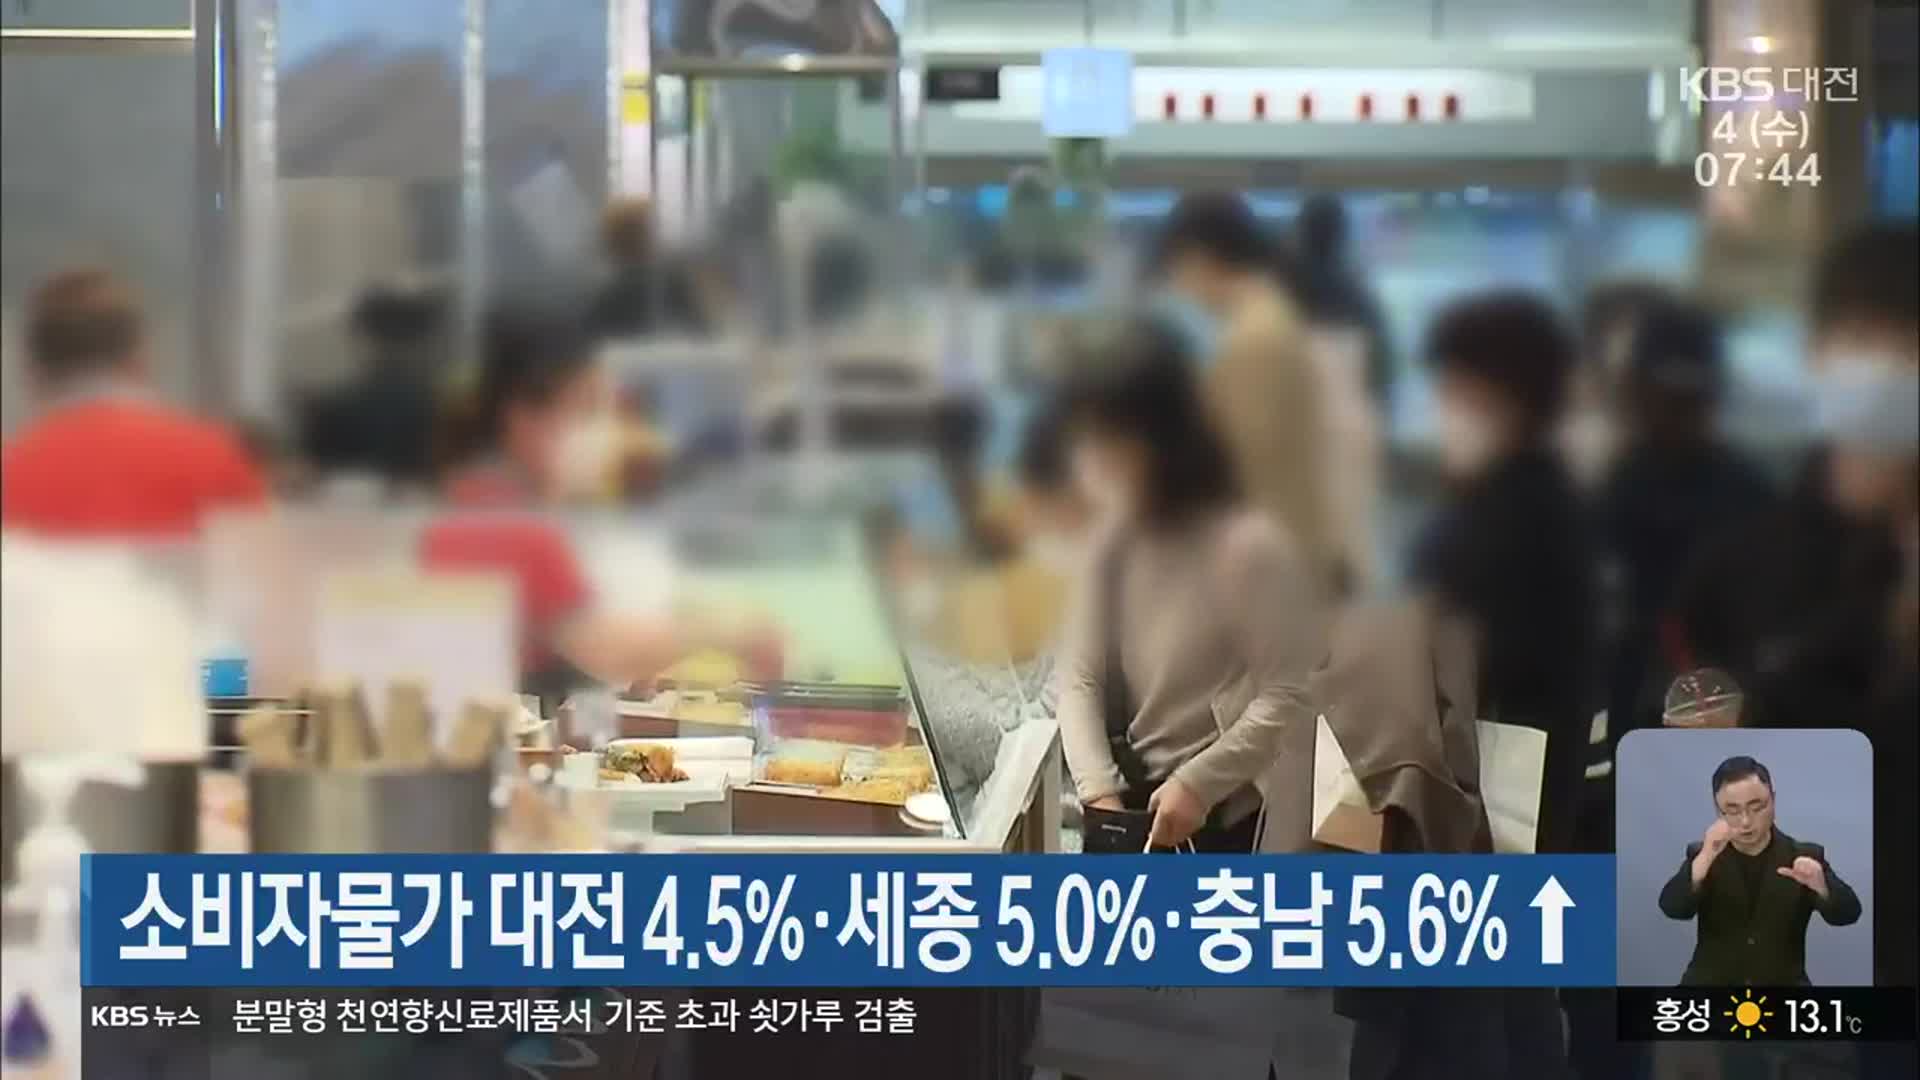 소비자물가 대전 4.5%·세종 5.0%·충남 5.6%↑